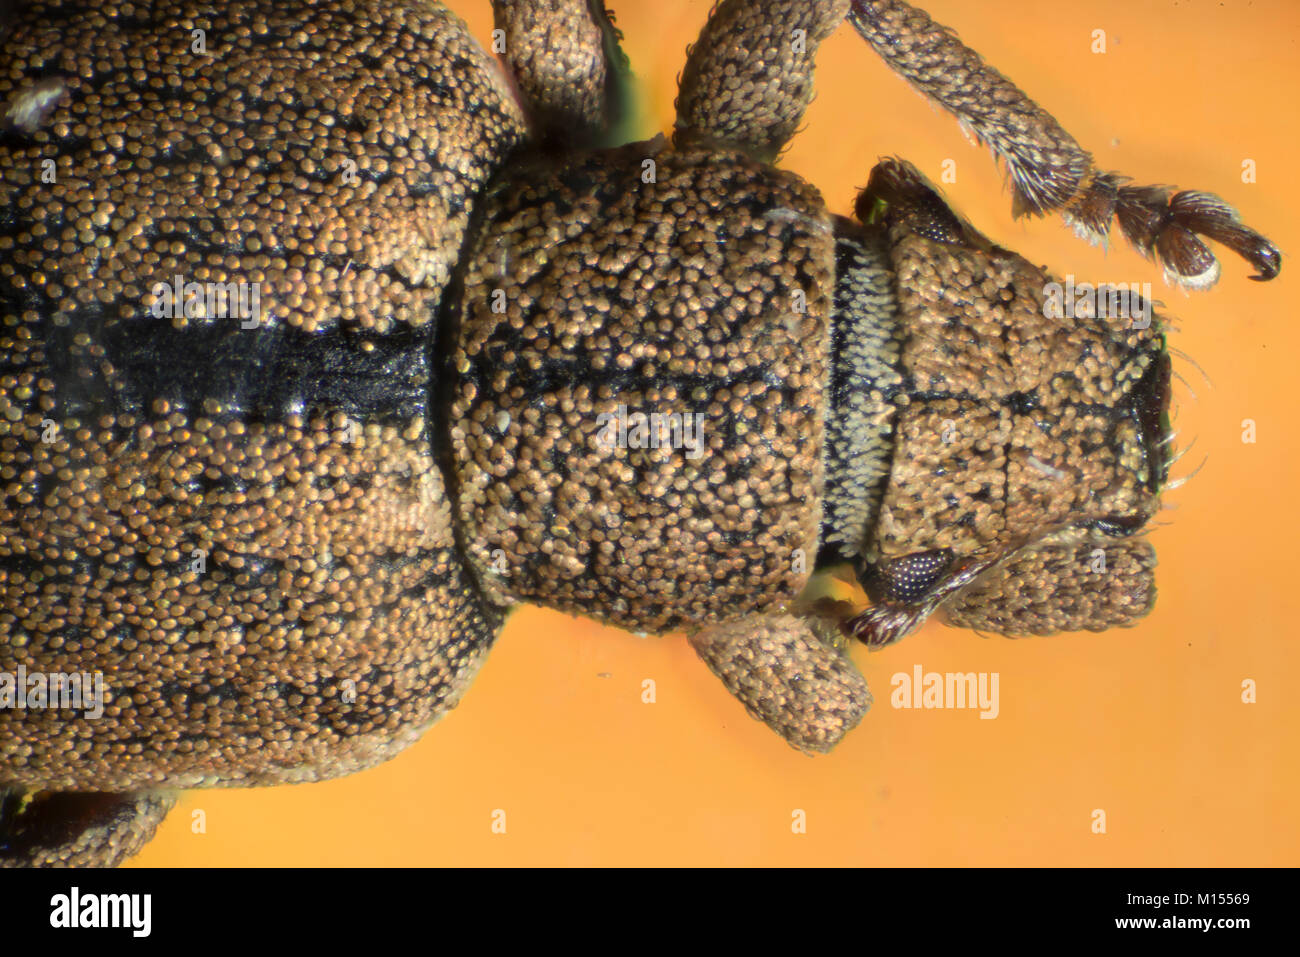 Los escarabajos son un grupo de insectos que forman el orden Coleoptera, en el superorder Endopterygota. Su par de alas delanteras está endurecido en casos de ala, Foto de stock